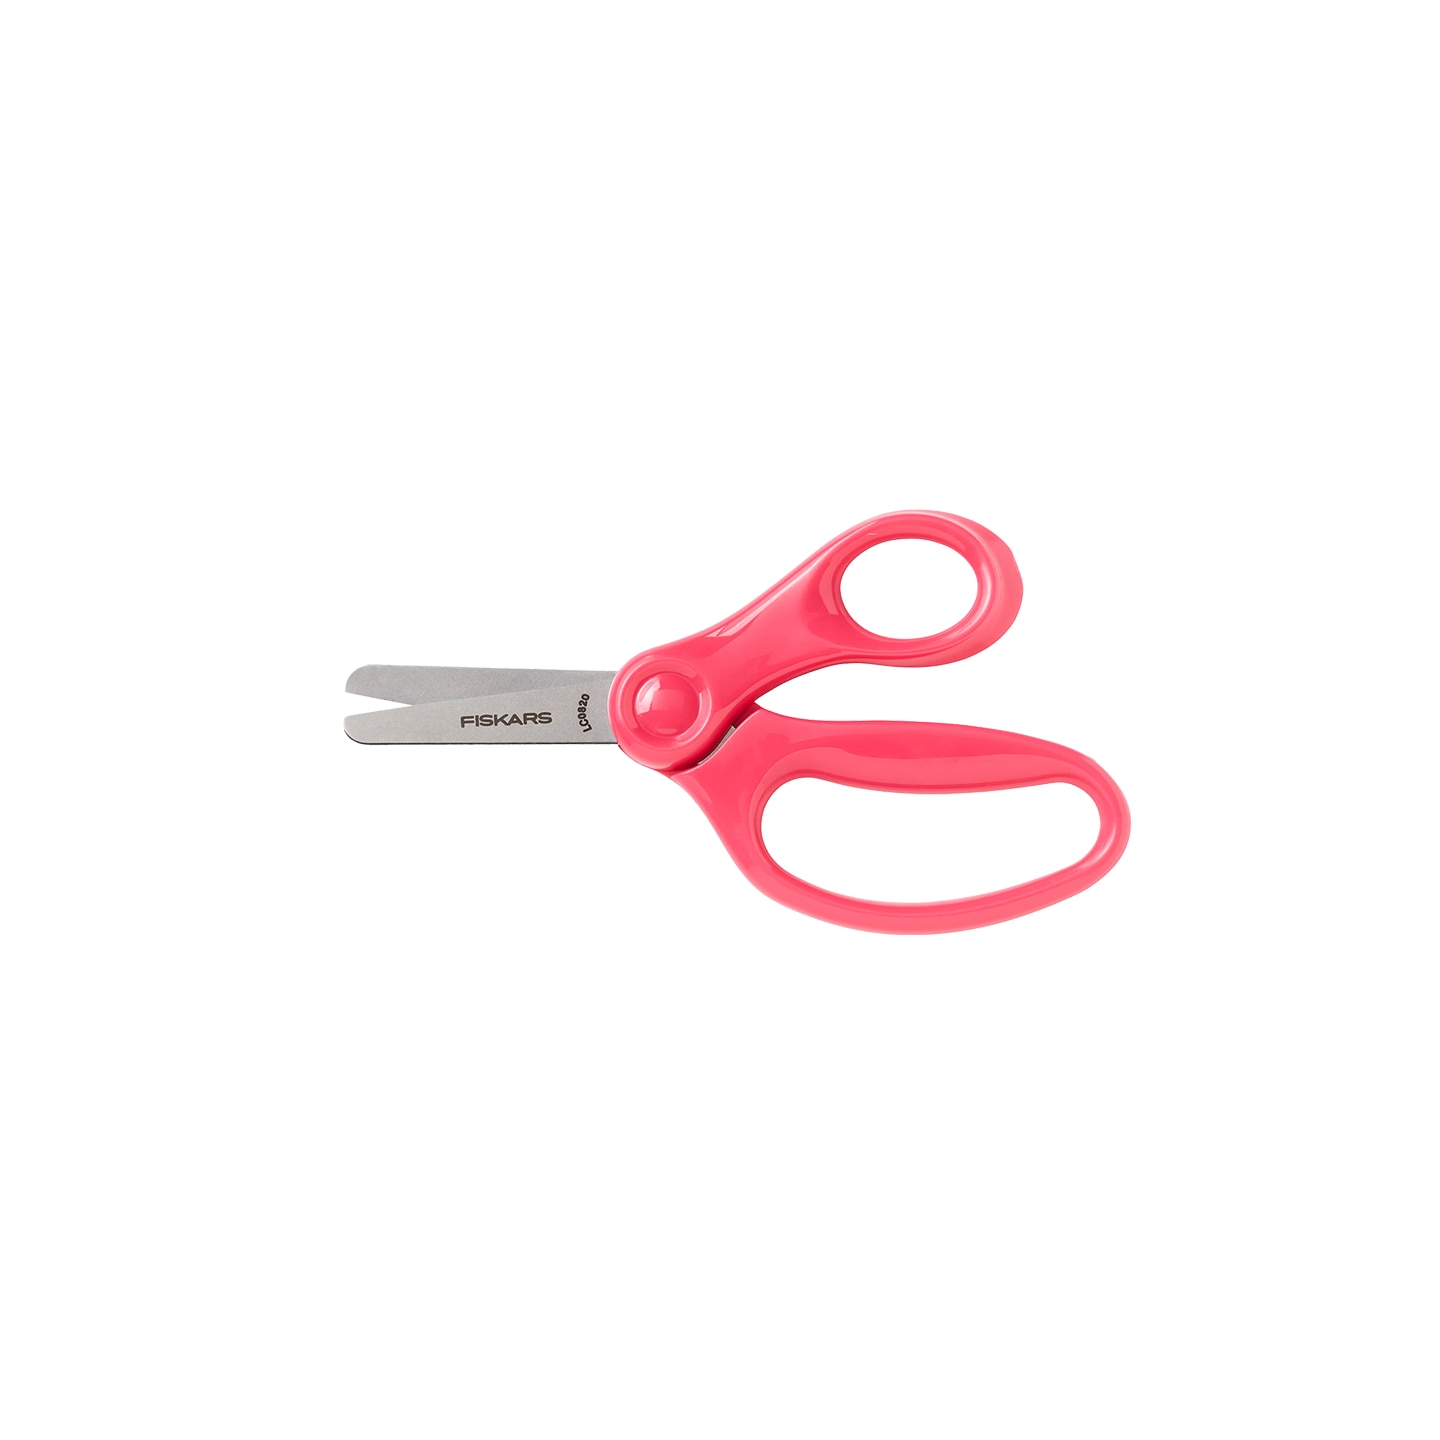 Blunt-tip Kids Scissors (5 in.), Pink